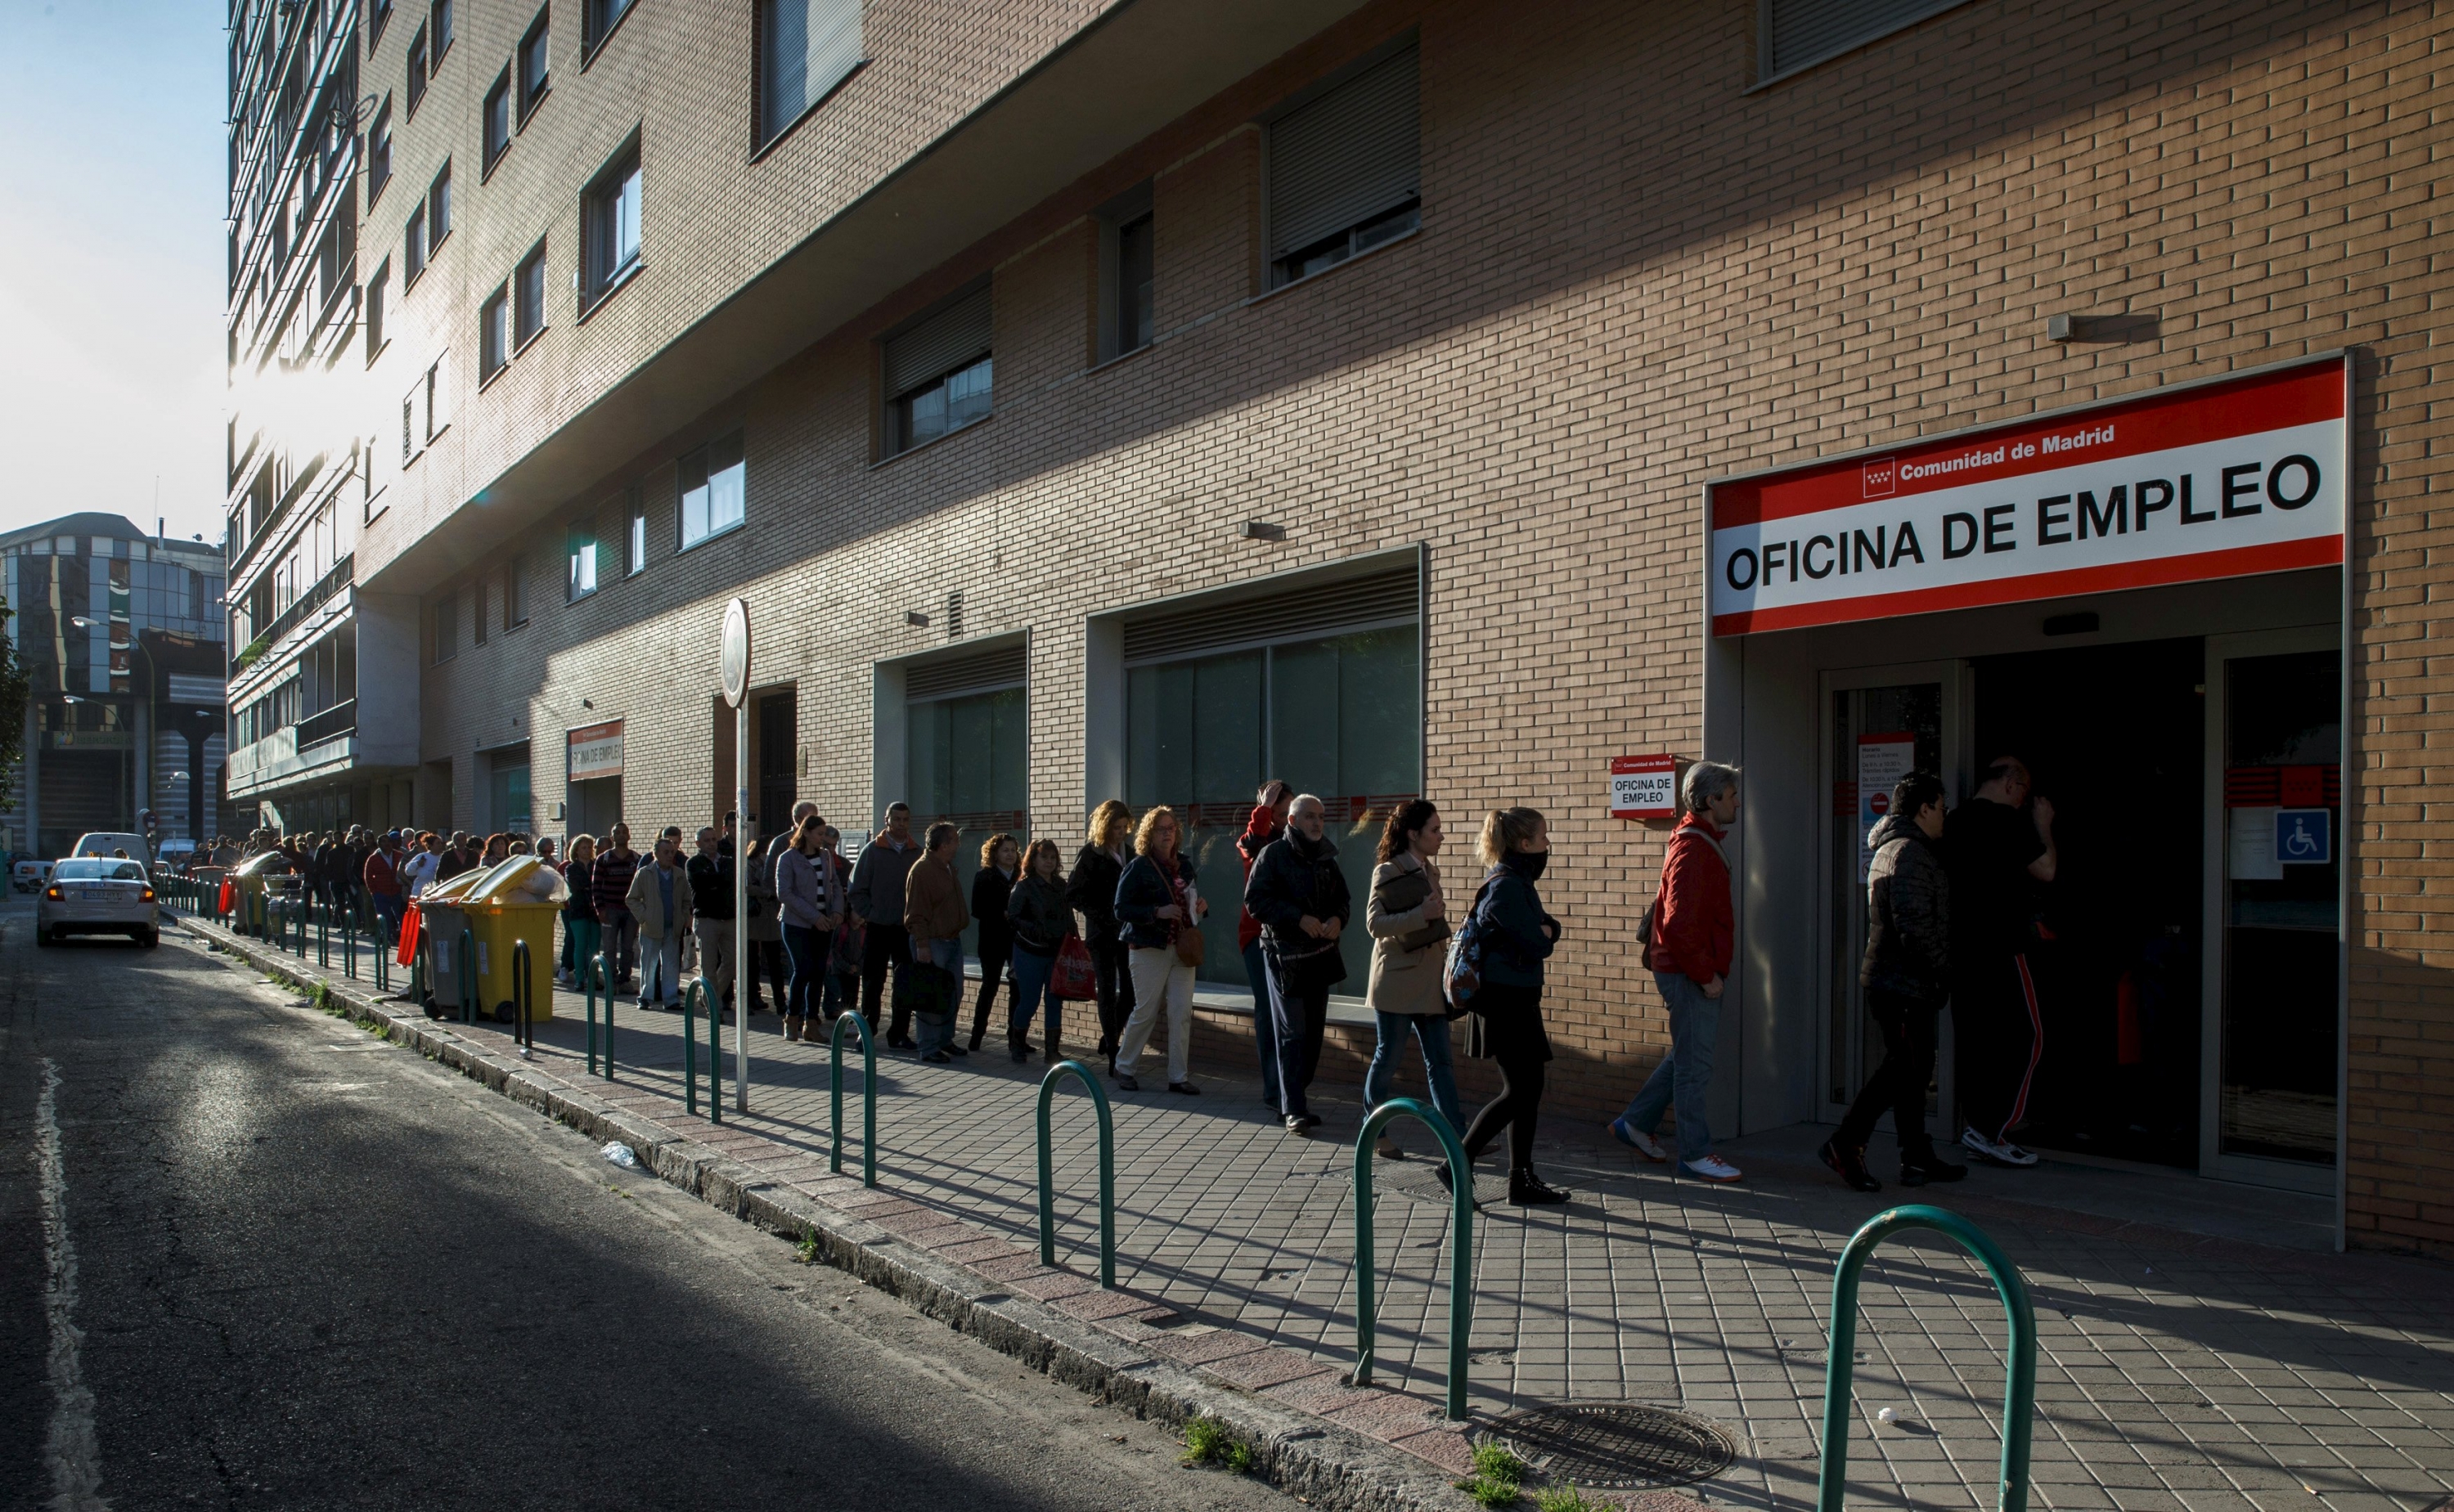 Coda di fronte ad un centro per l'impiego spagnolo (www.publico.es)